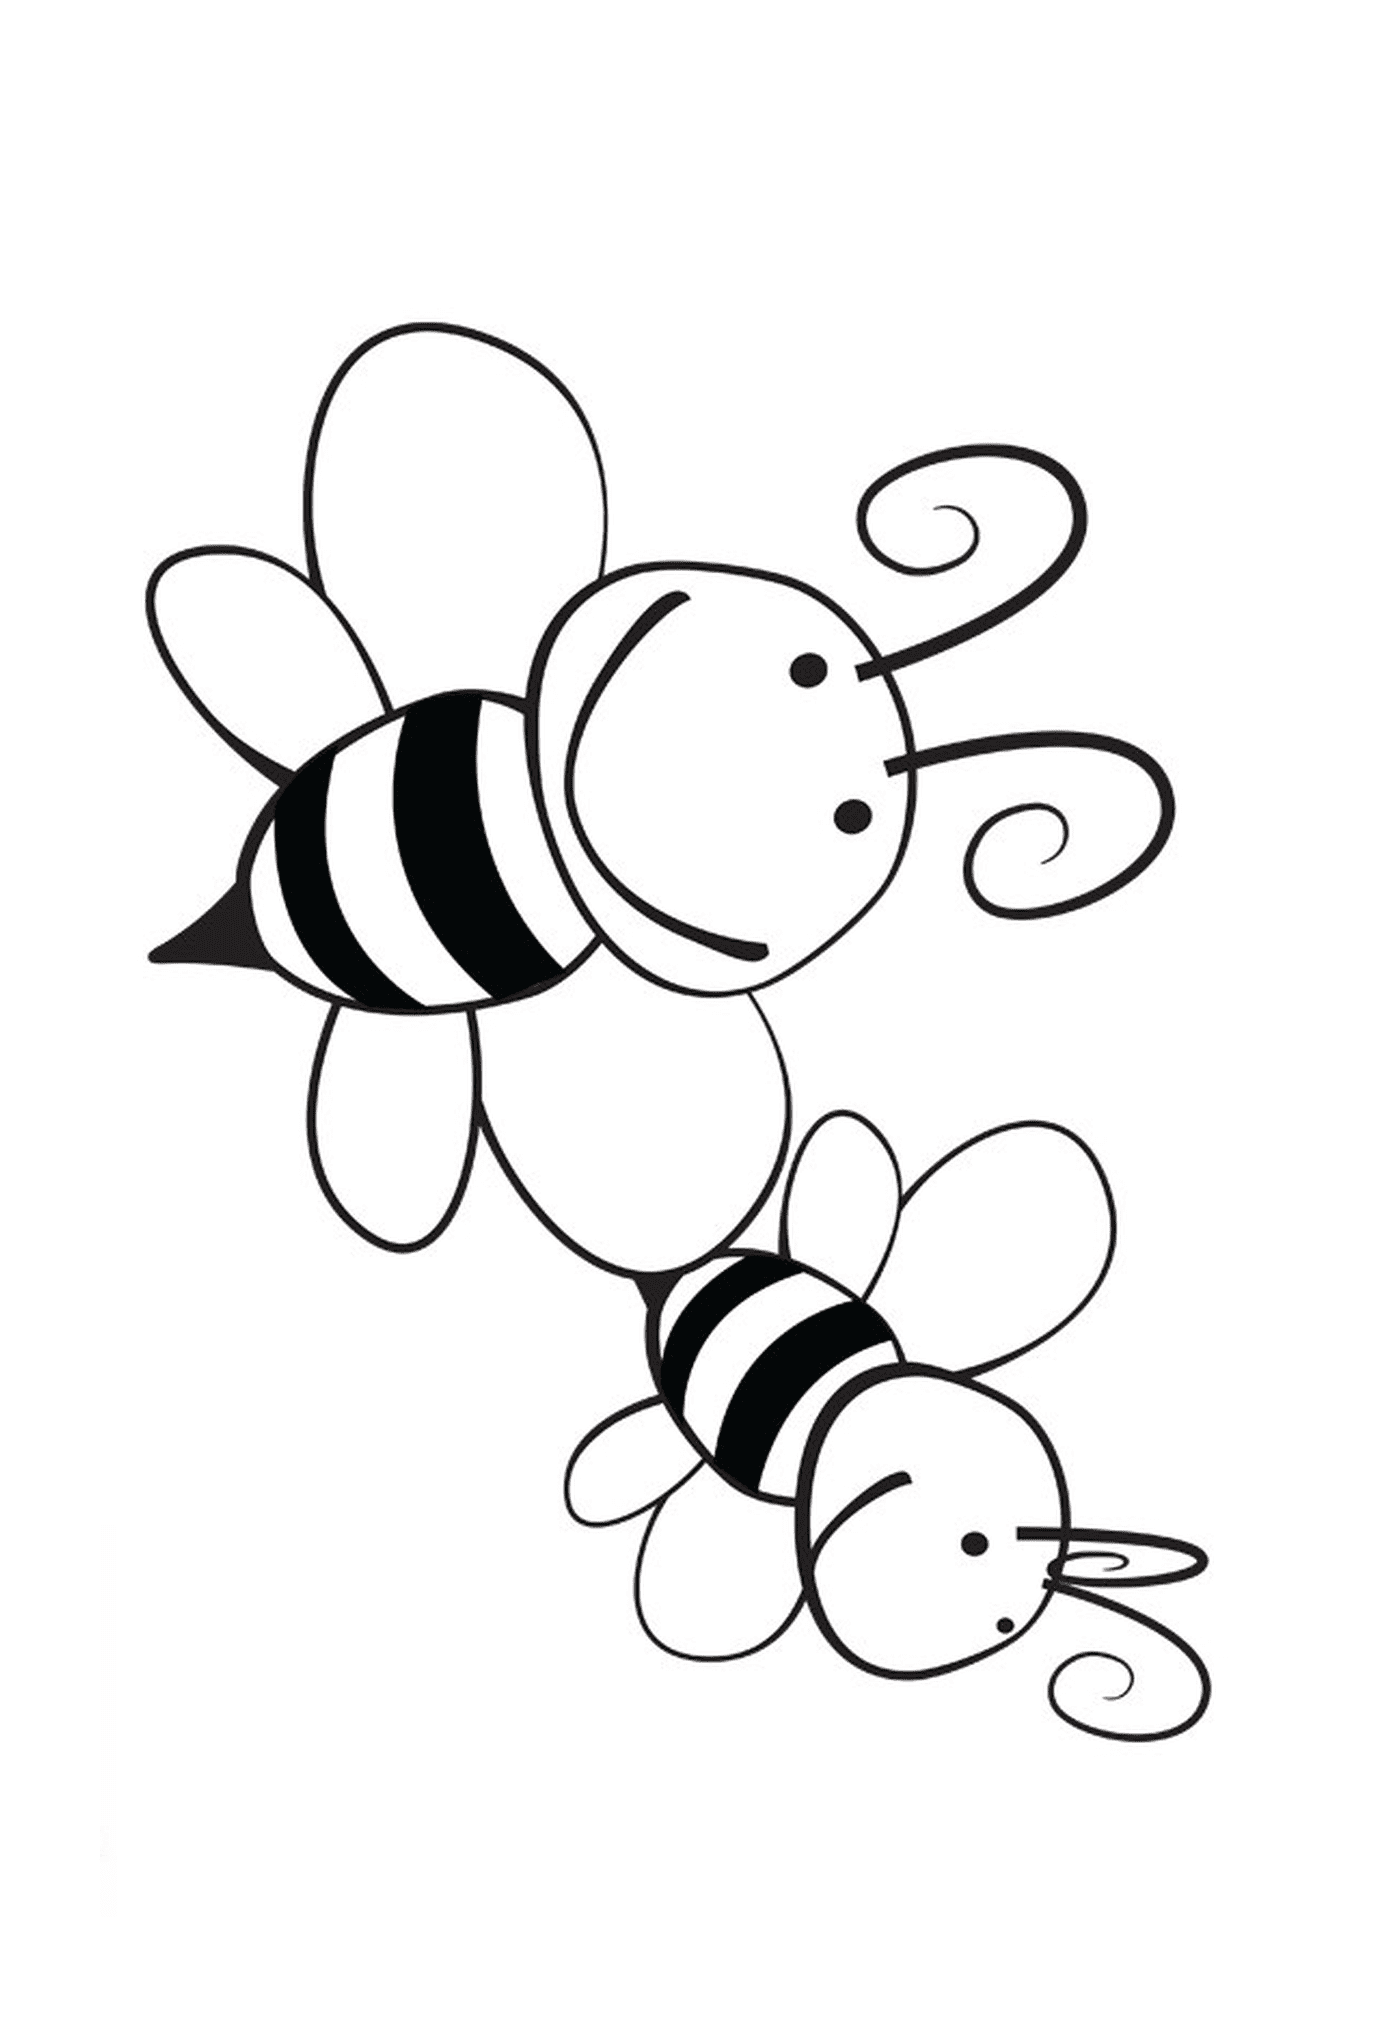  اثنان من النحل المبتسمان معاً 